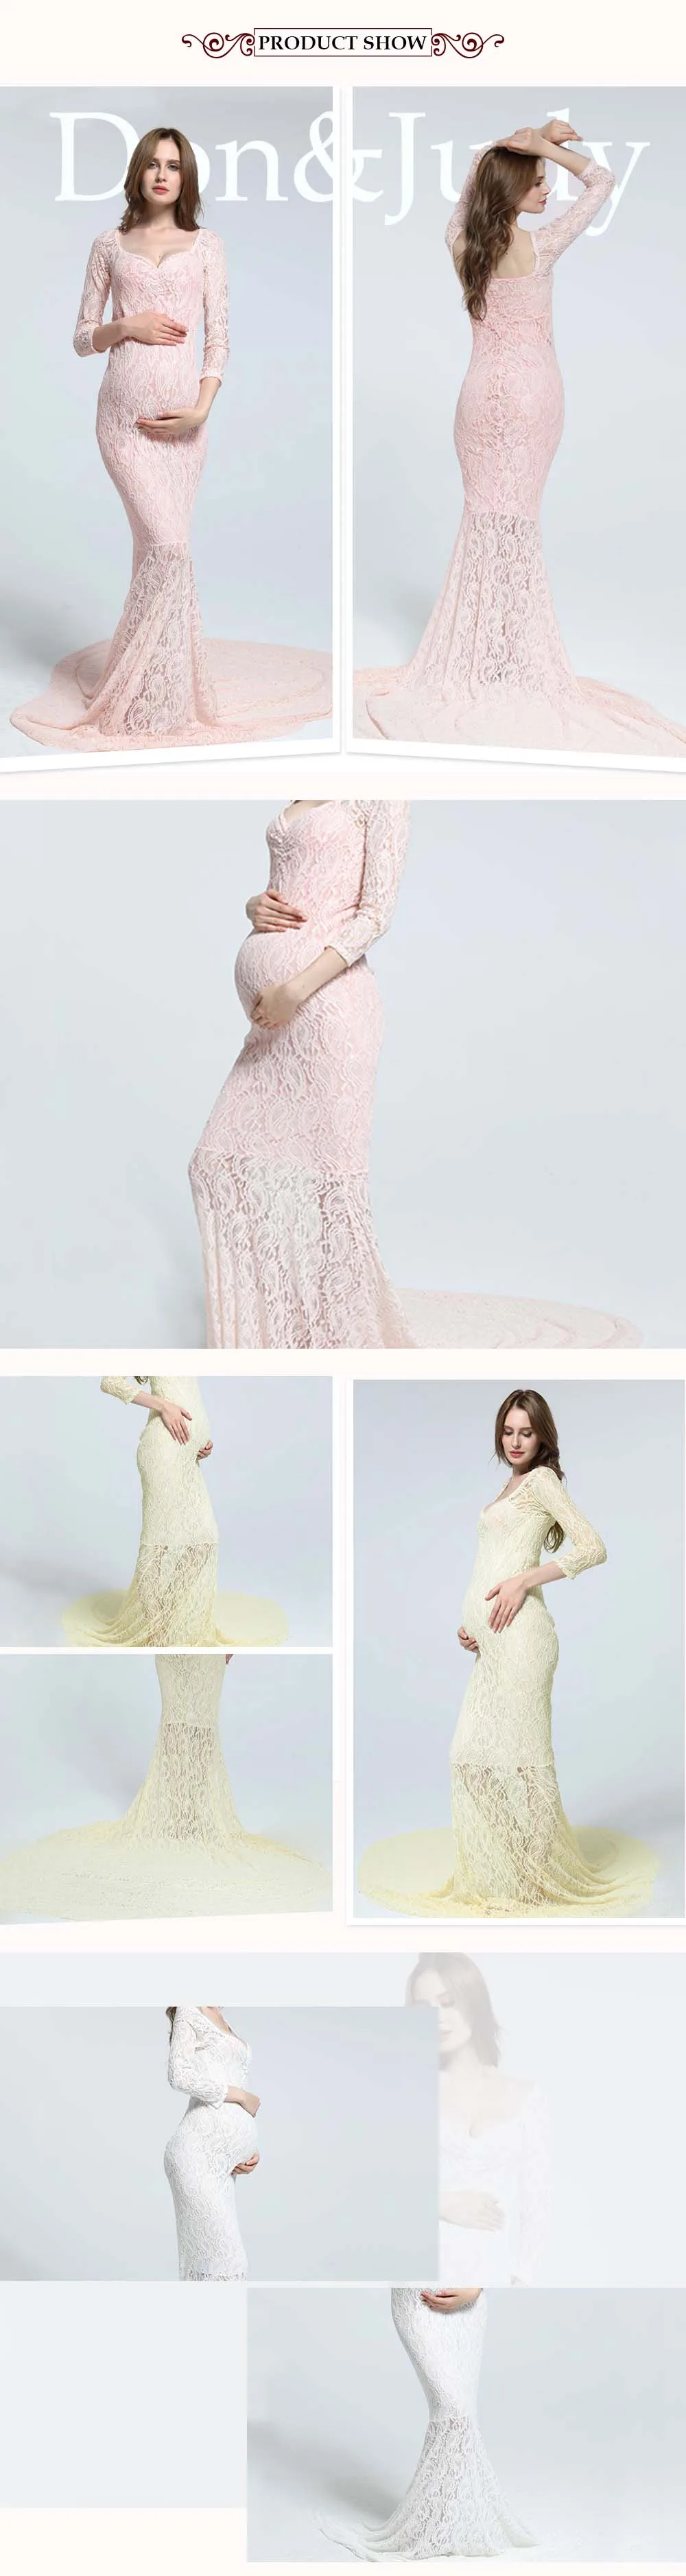 Эластичное кружевное платье для беременных; реквизит для фотосессии; Платье макси с длинными рукавами; платье с открытыми плечами для фотосессии; цвет белый, розовый; платья для беременных